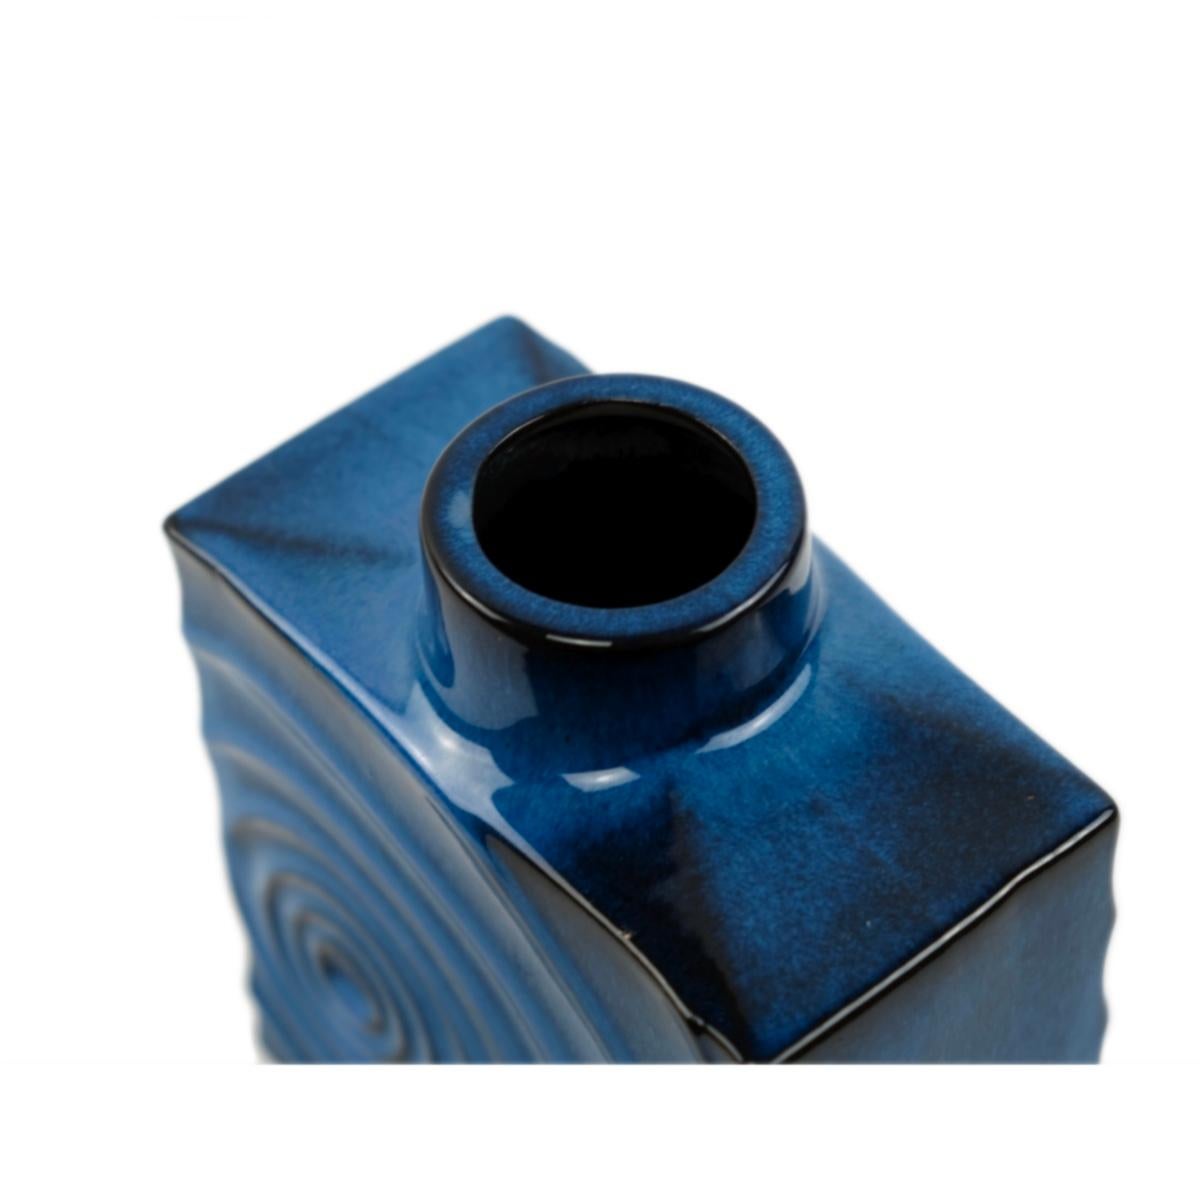 Set of 3 Cari Zalloni for Steuler ceramic blue-black „ Zyklon“ vases  1060s For Sale 6